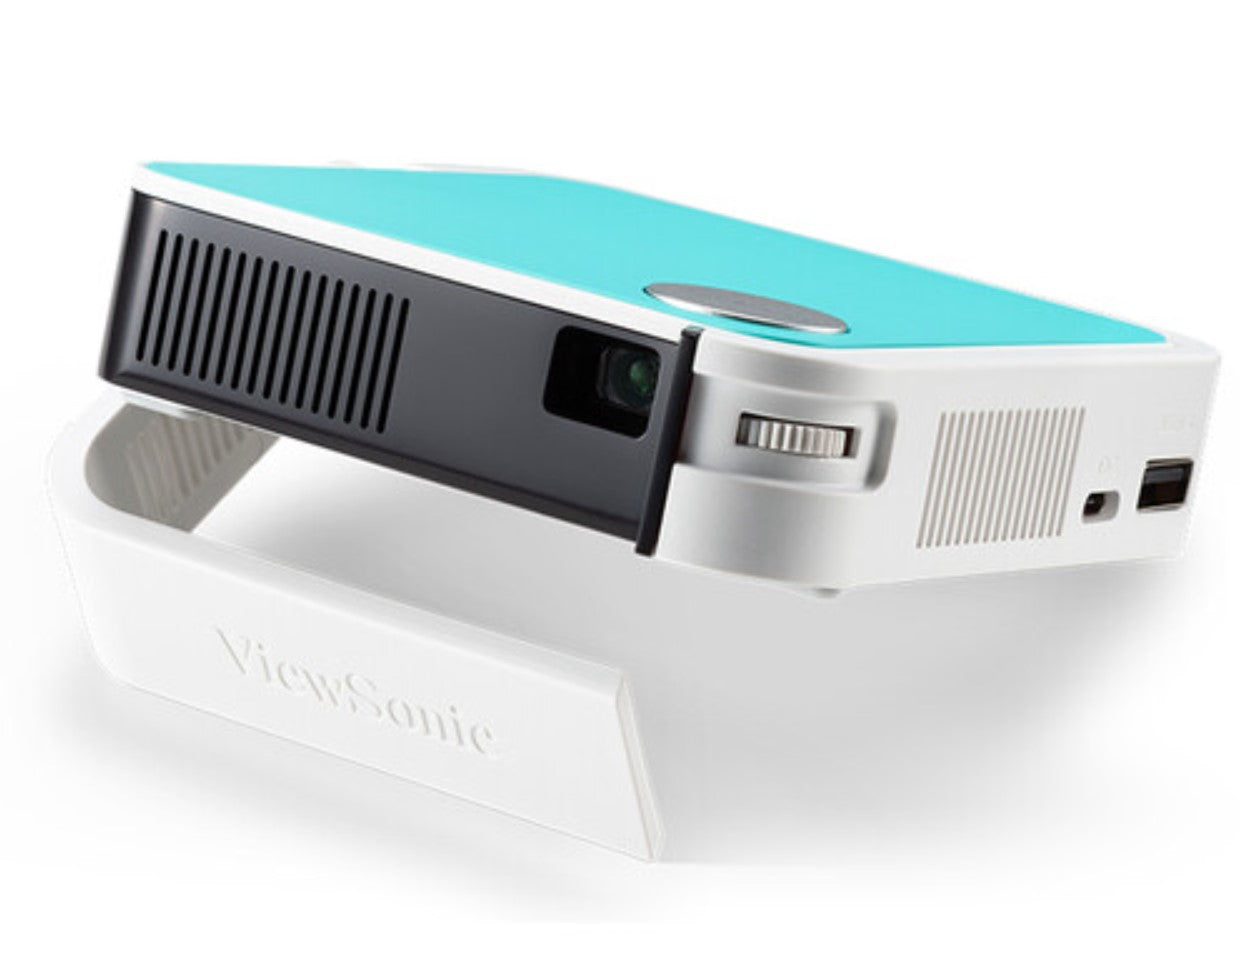 ViewSonic M1MINIPLUS-S Portable LED Projector & JBLSpeaker Certified Refurbished